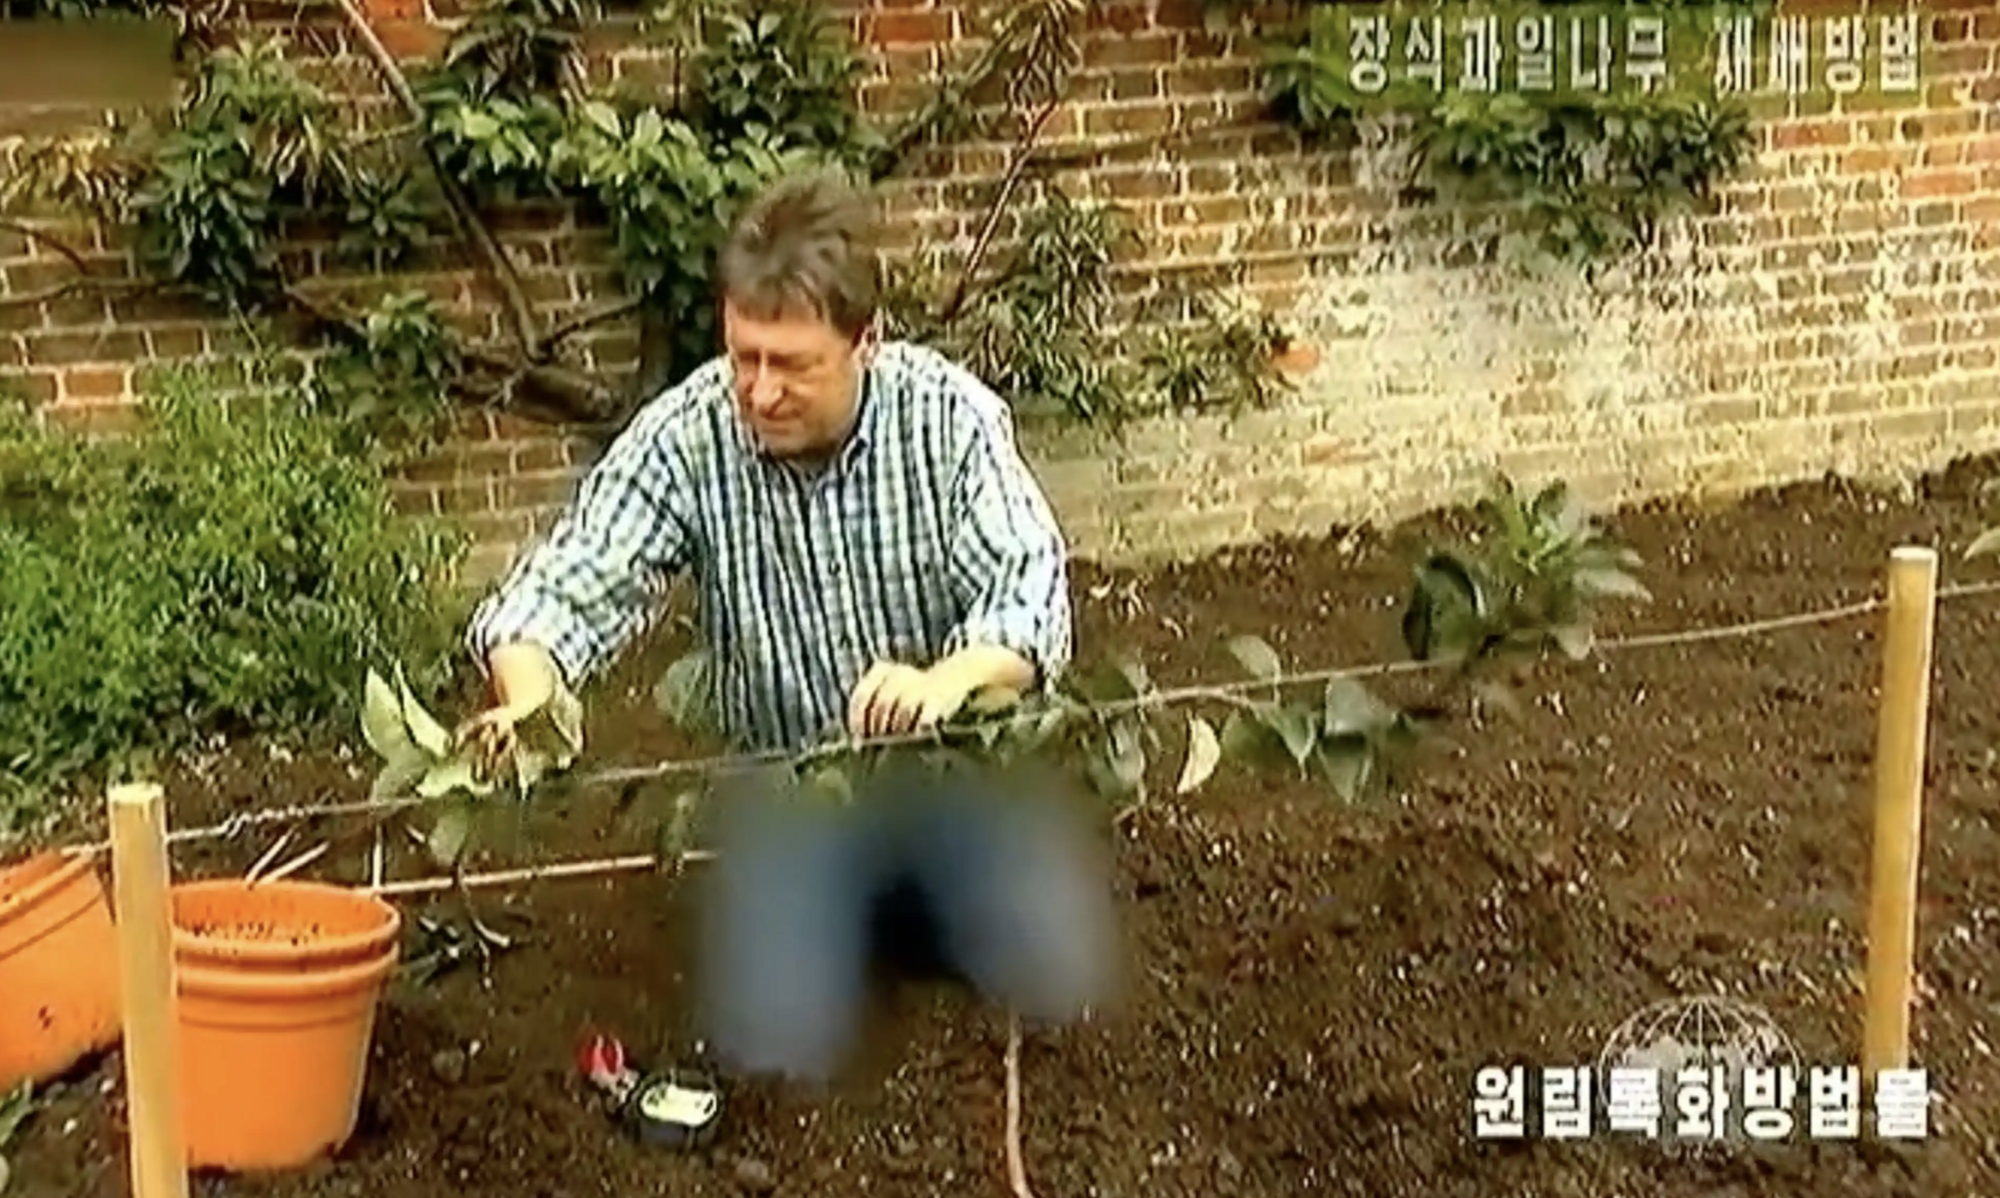 На телевидении КНДР зацензурили джинсы ведущего BBC: что с ними не так. Фото и видео